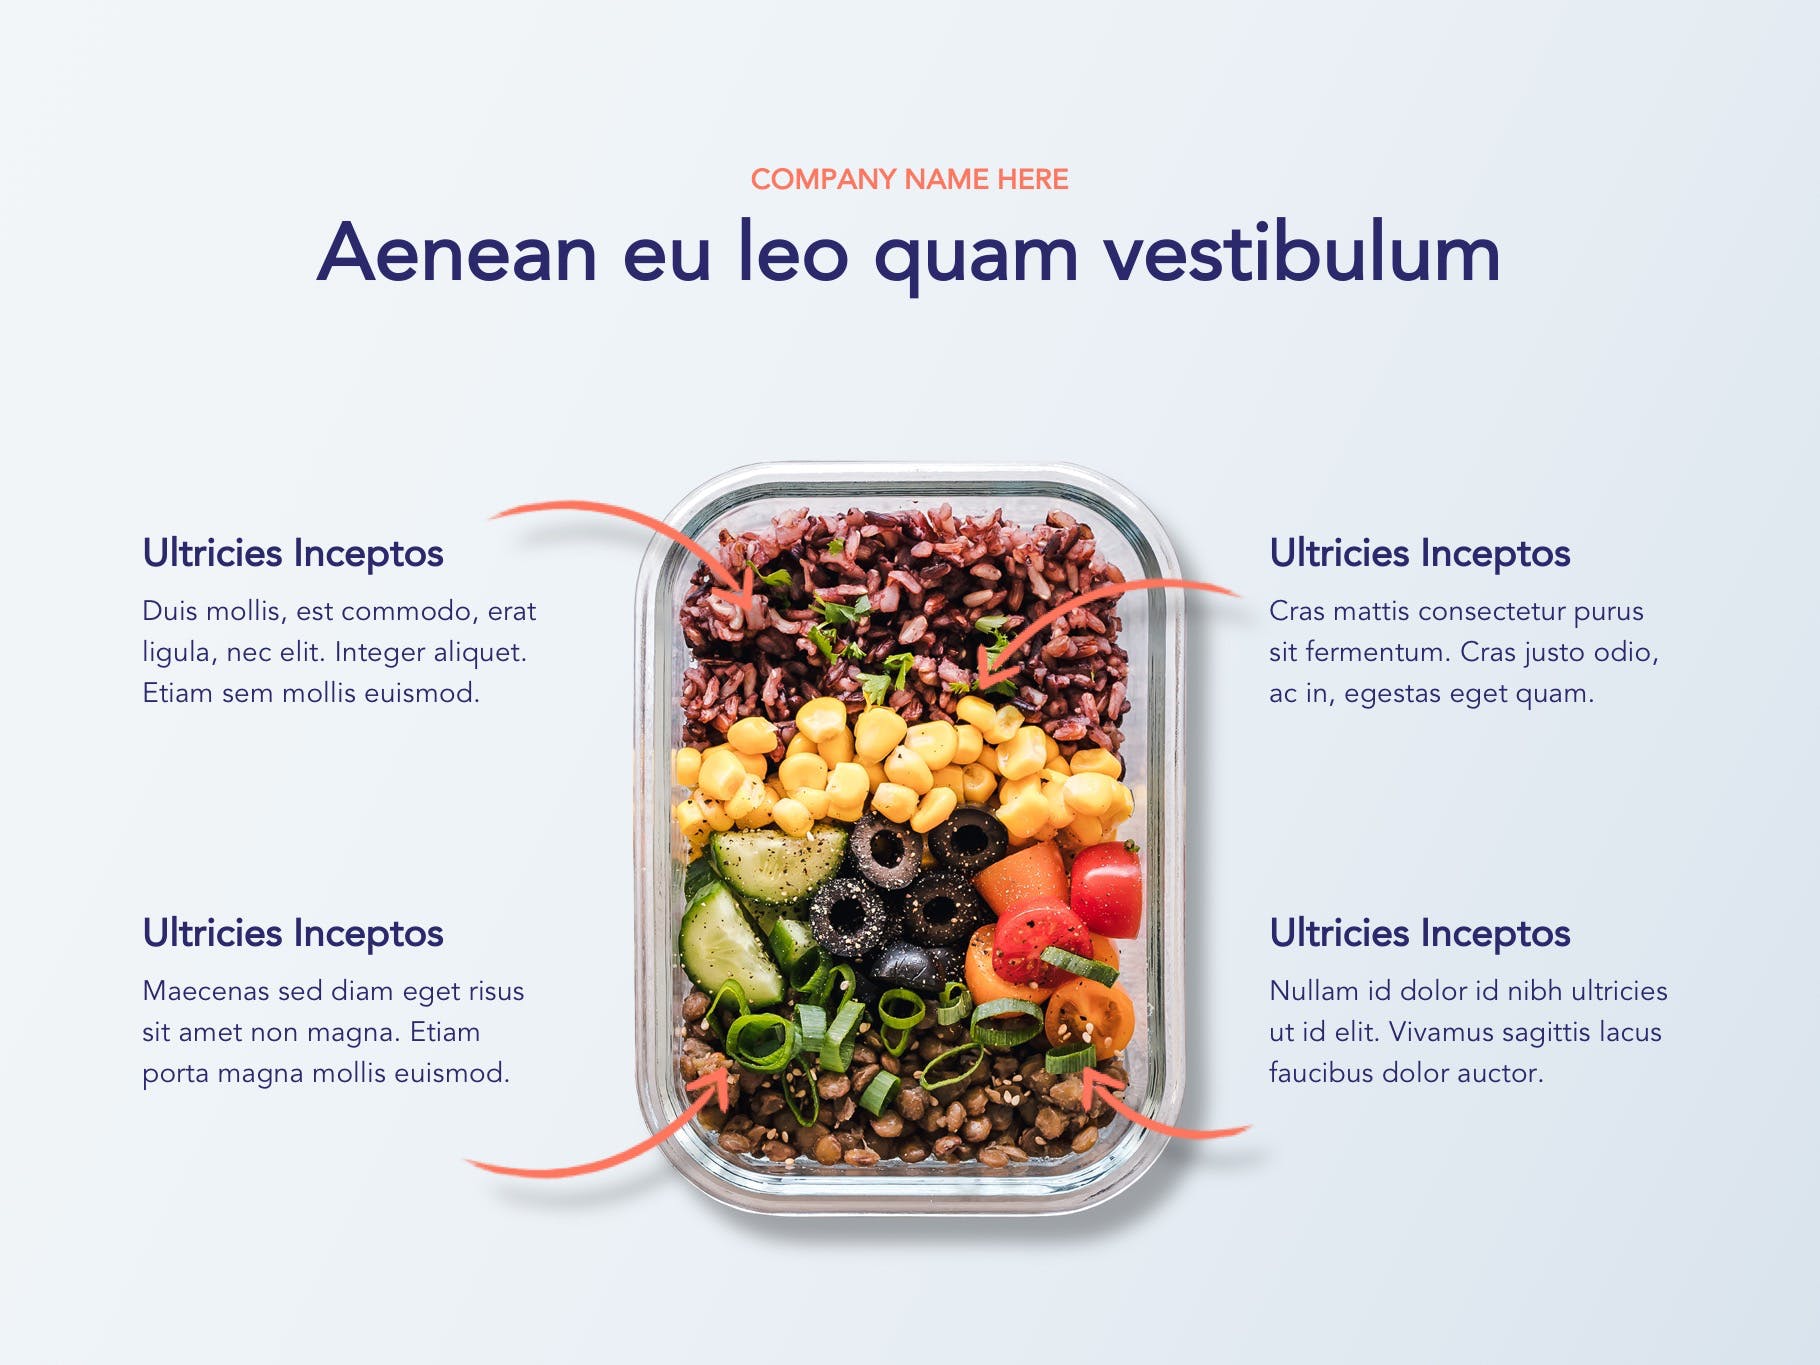 营养配餐食谱谷歌幻灯片设计模板 Nutritious Google Slides Template插图5